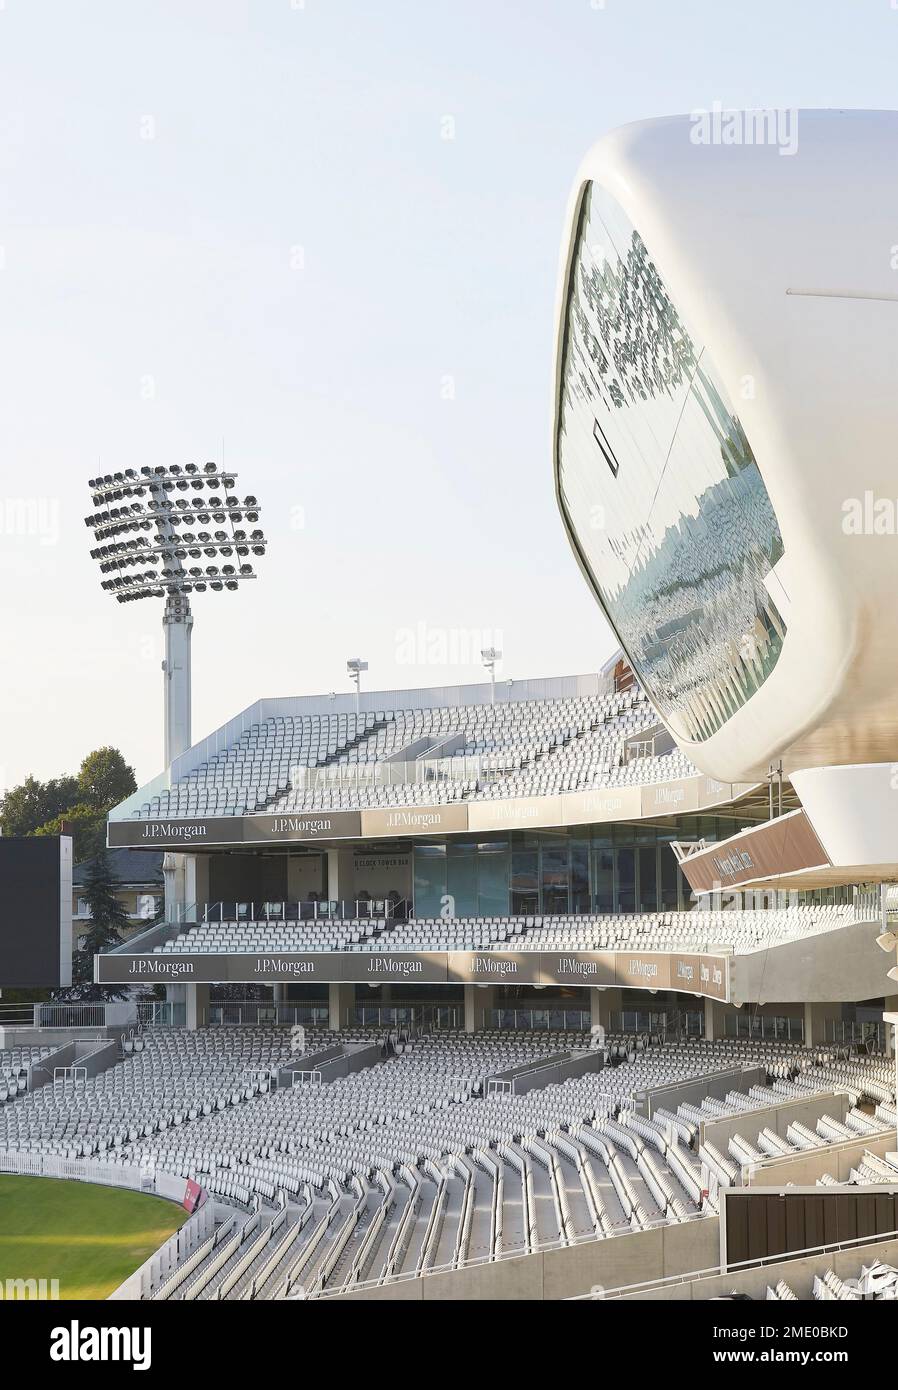 Media Center et Compton sont au-delà. Lord's Cricket Ground, Londres, Royaume-Uni. Architecte : Wilkinson Eyre Architects, 2021. Banque D'Images